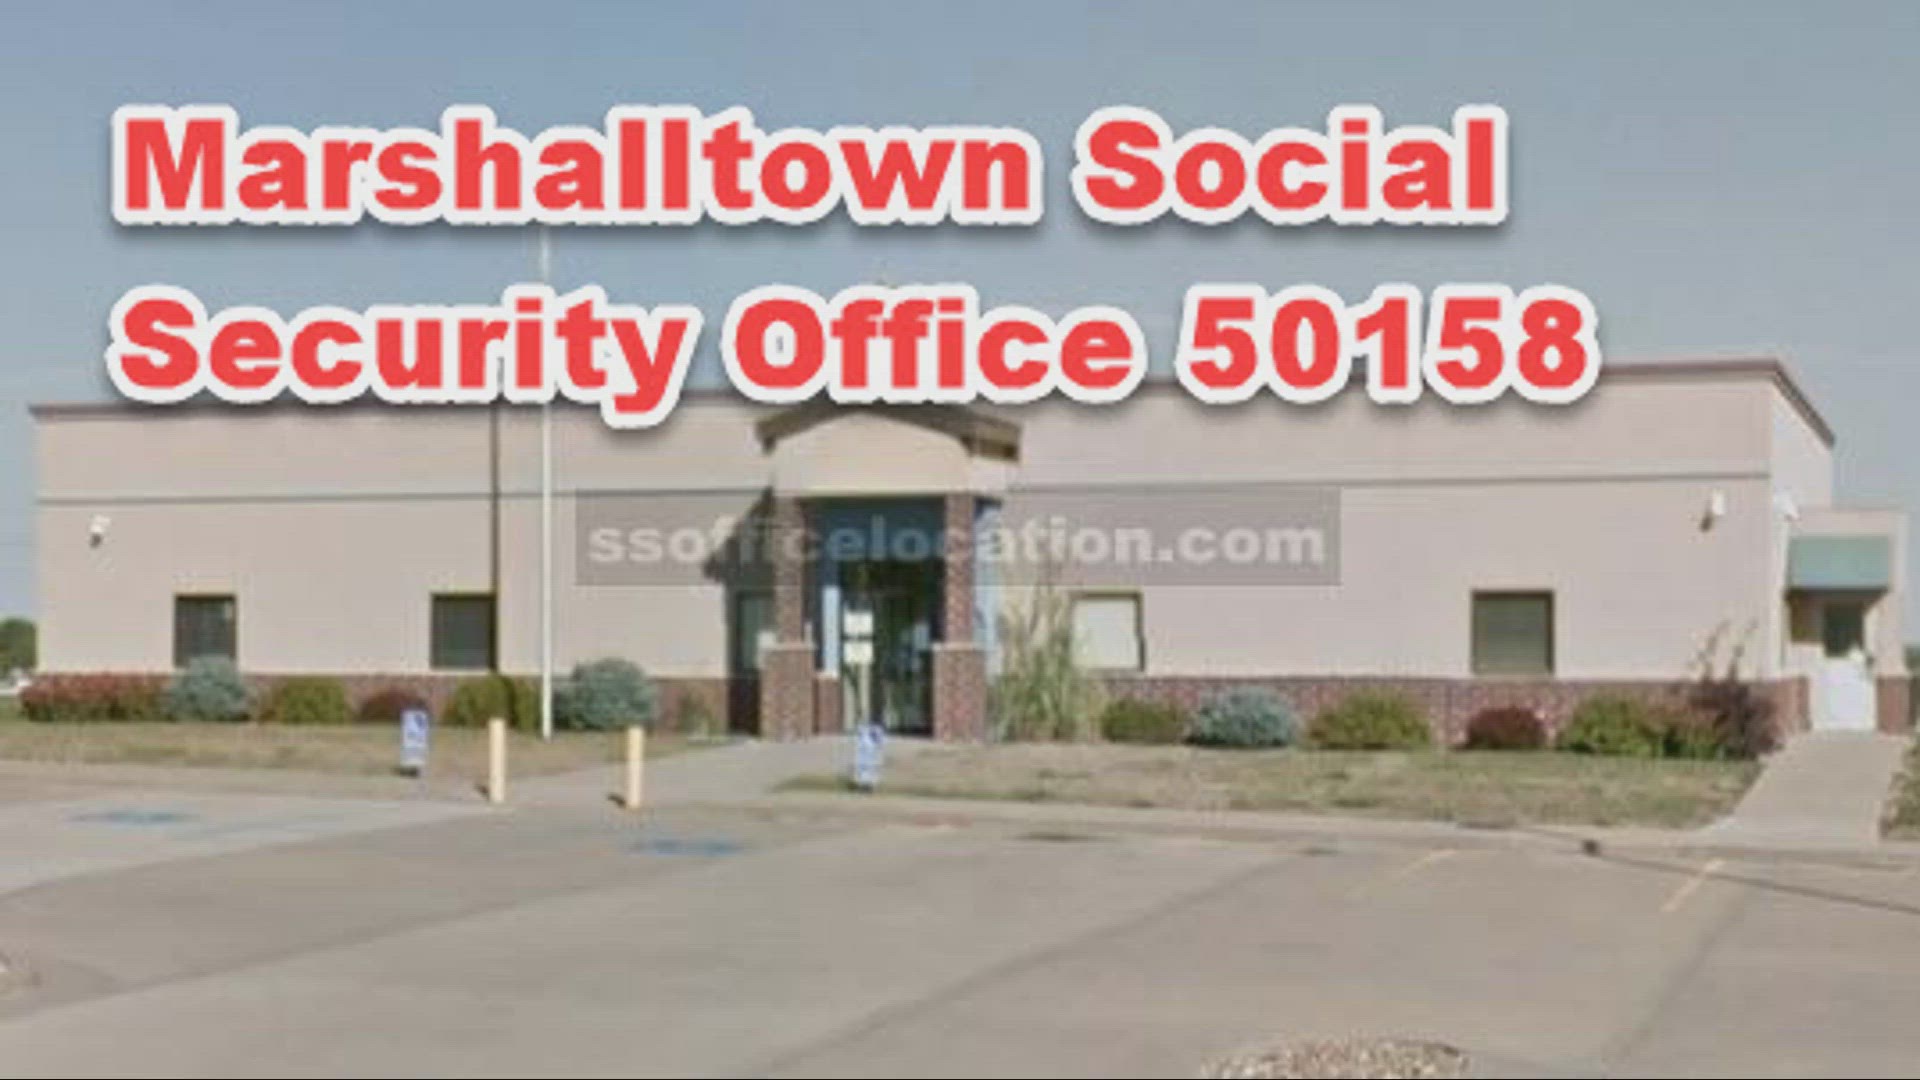 Marshalltown, IA, 50158, Social Security Office 